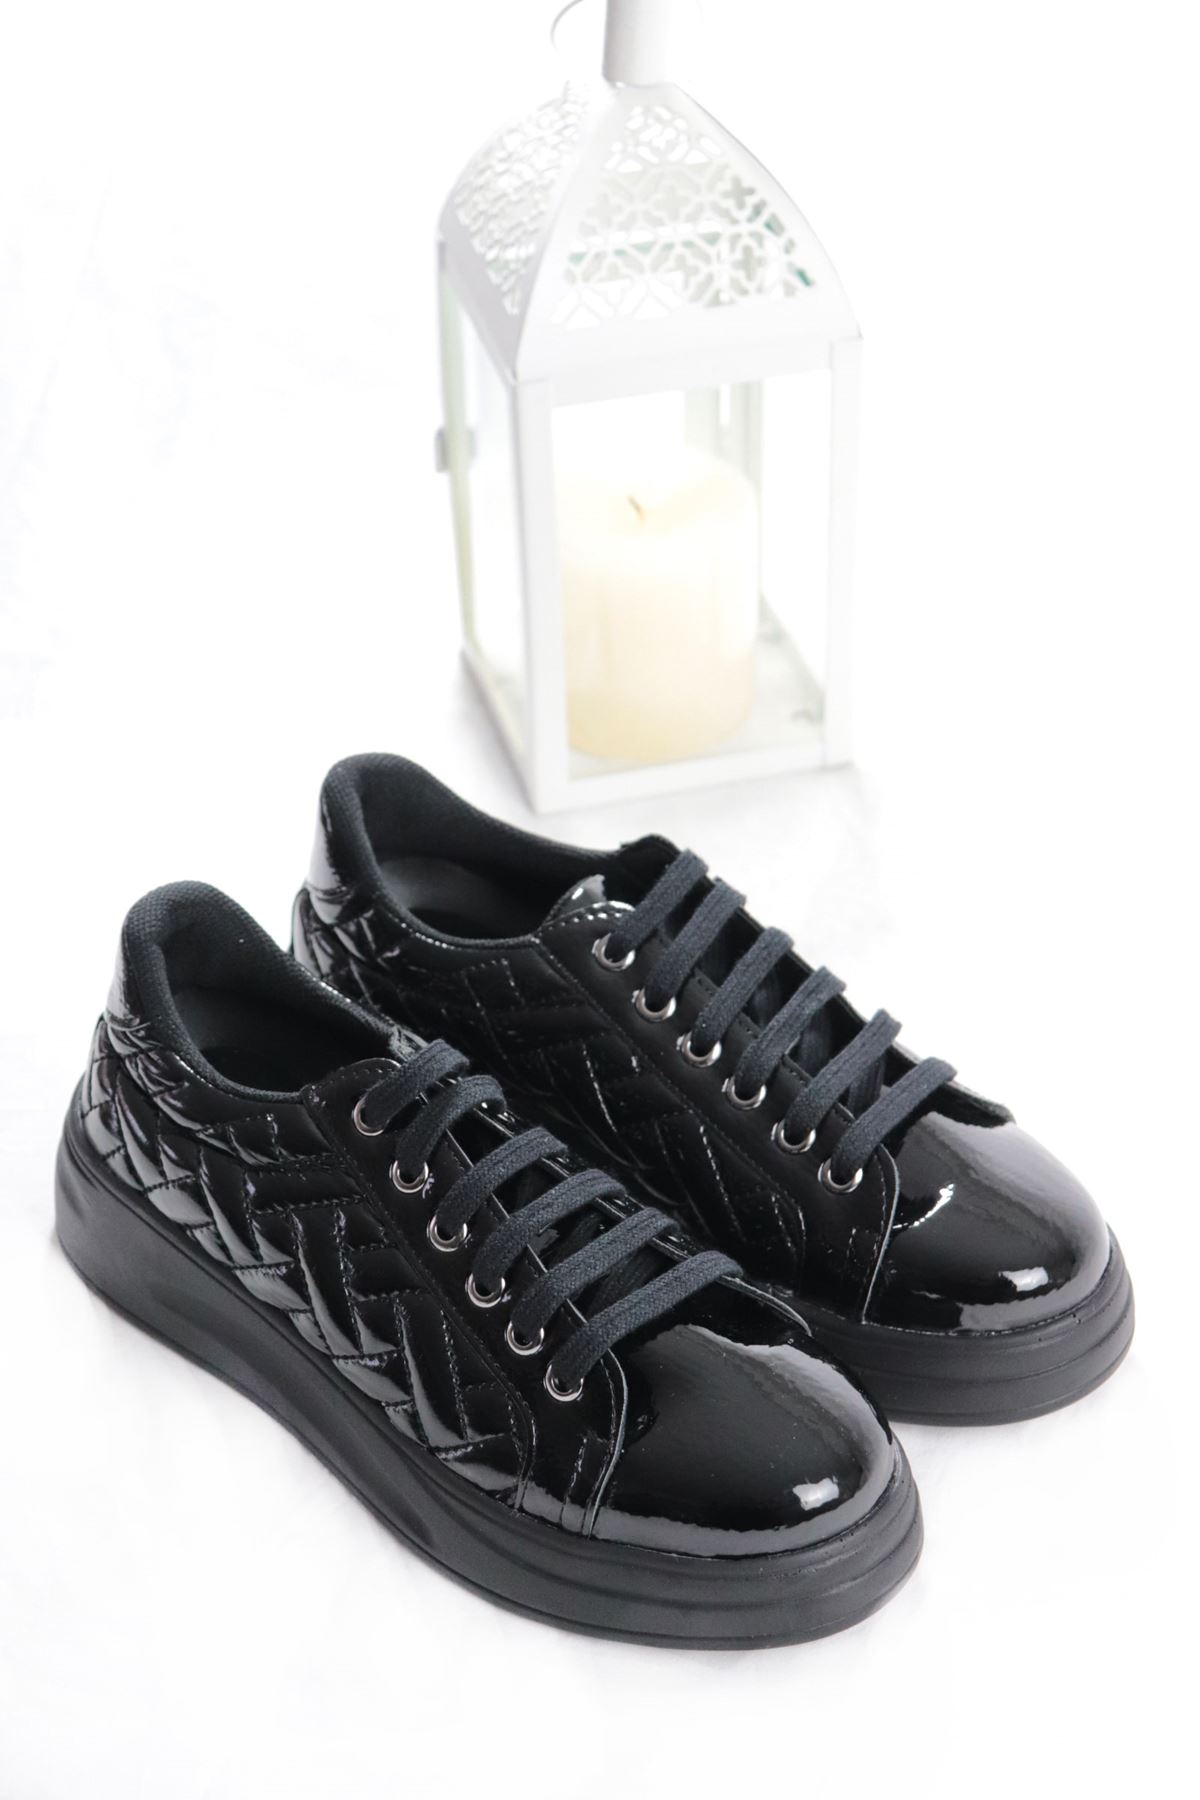 Trendayakkabı - Siyah Rugan Kadın Spor Ayakkabı 